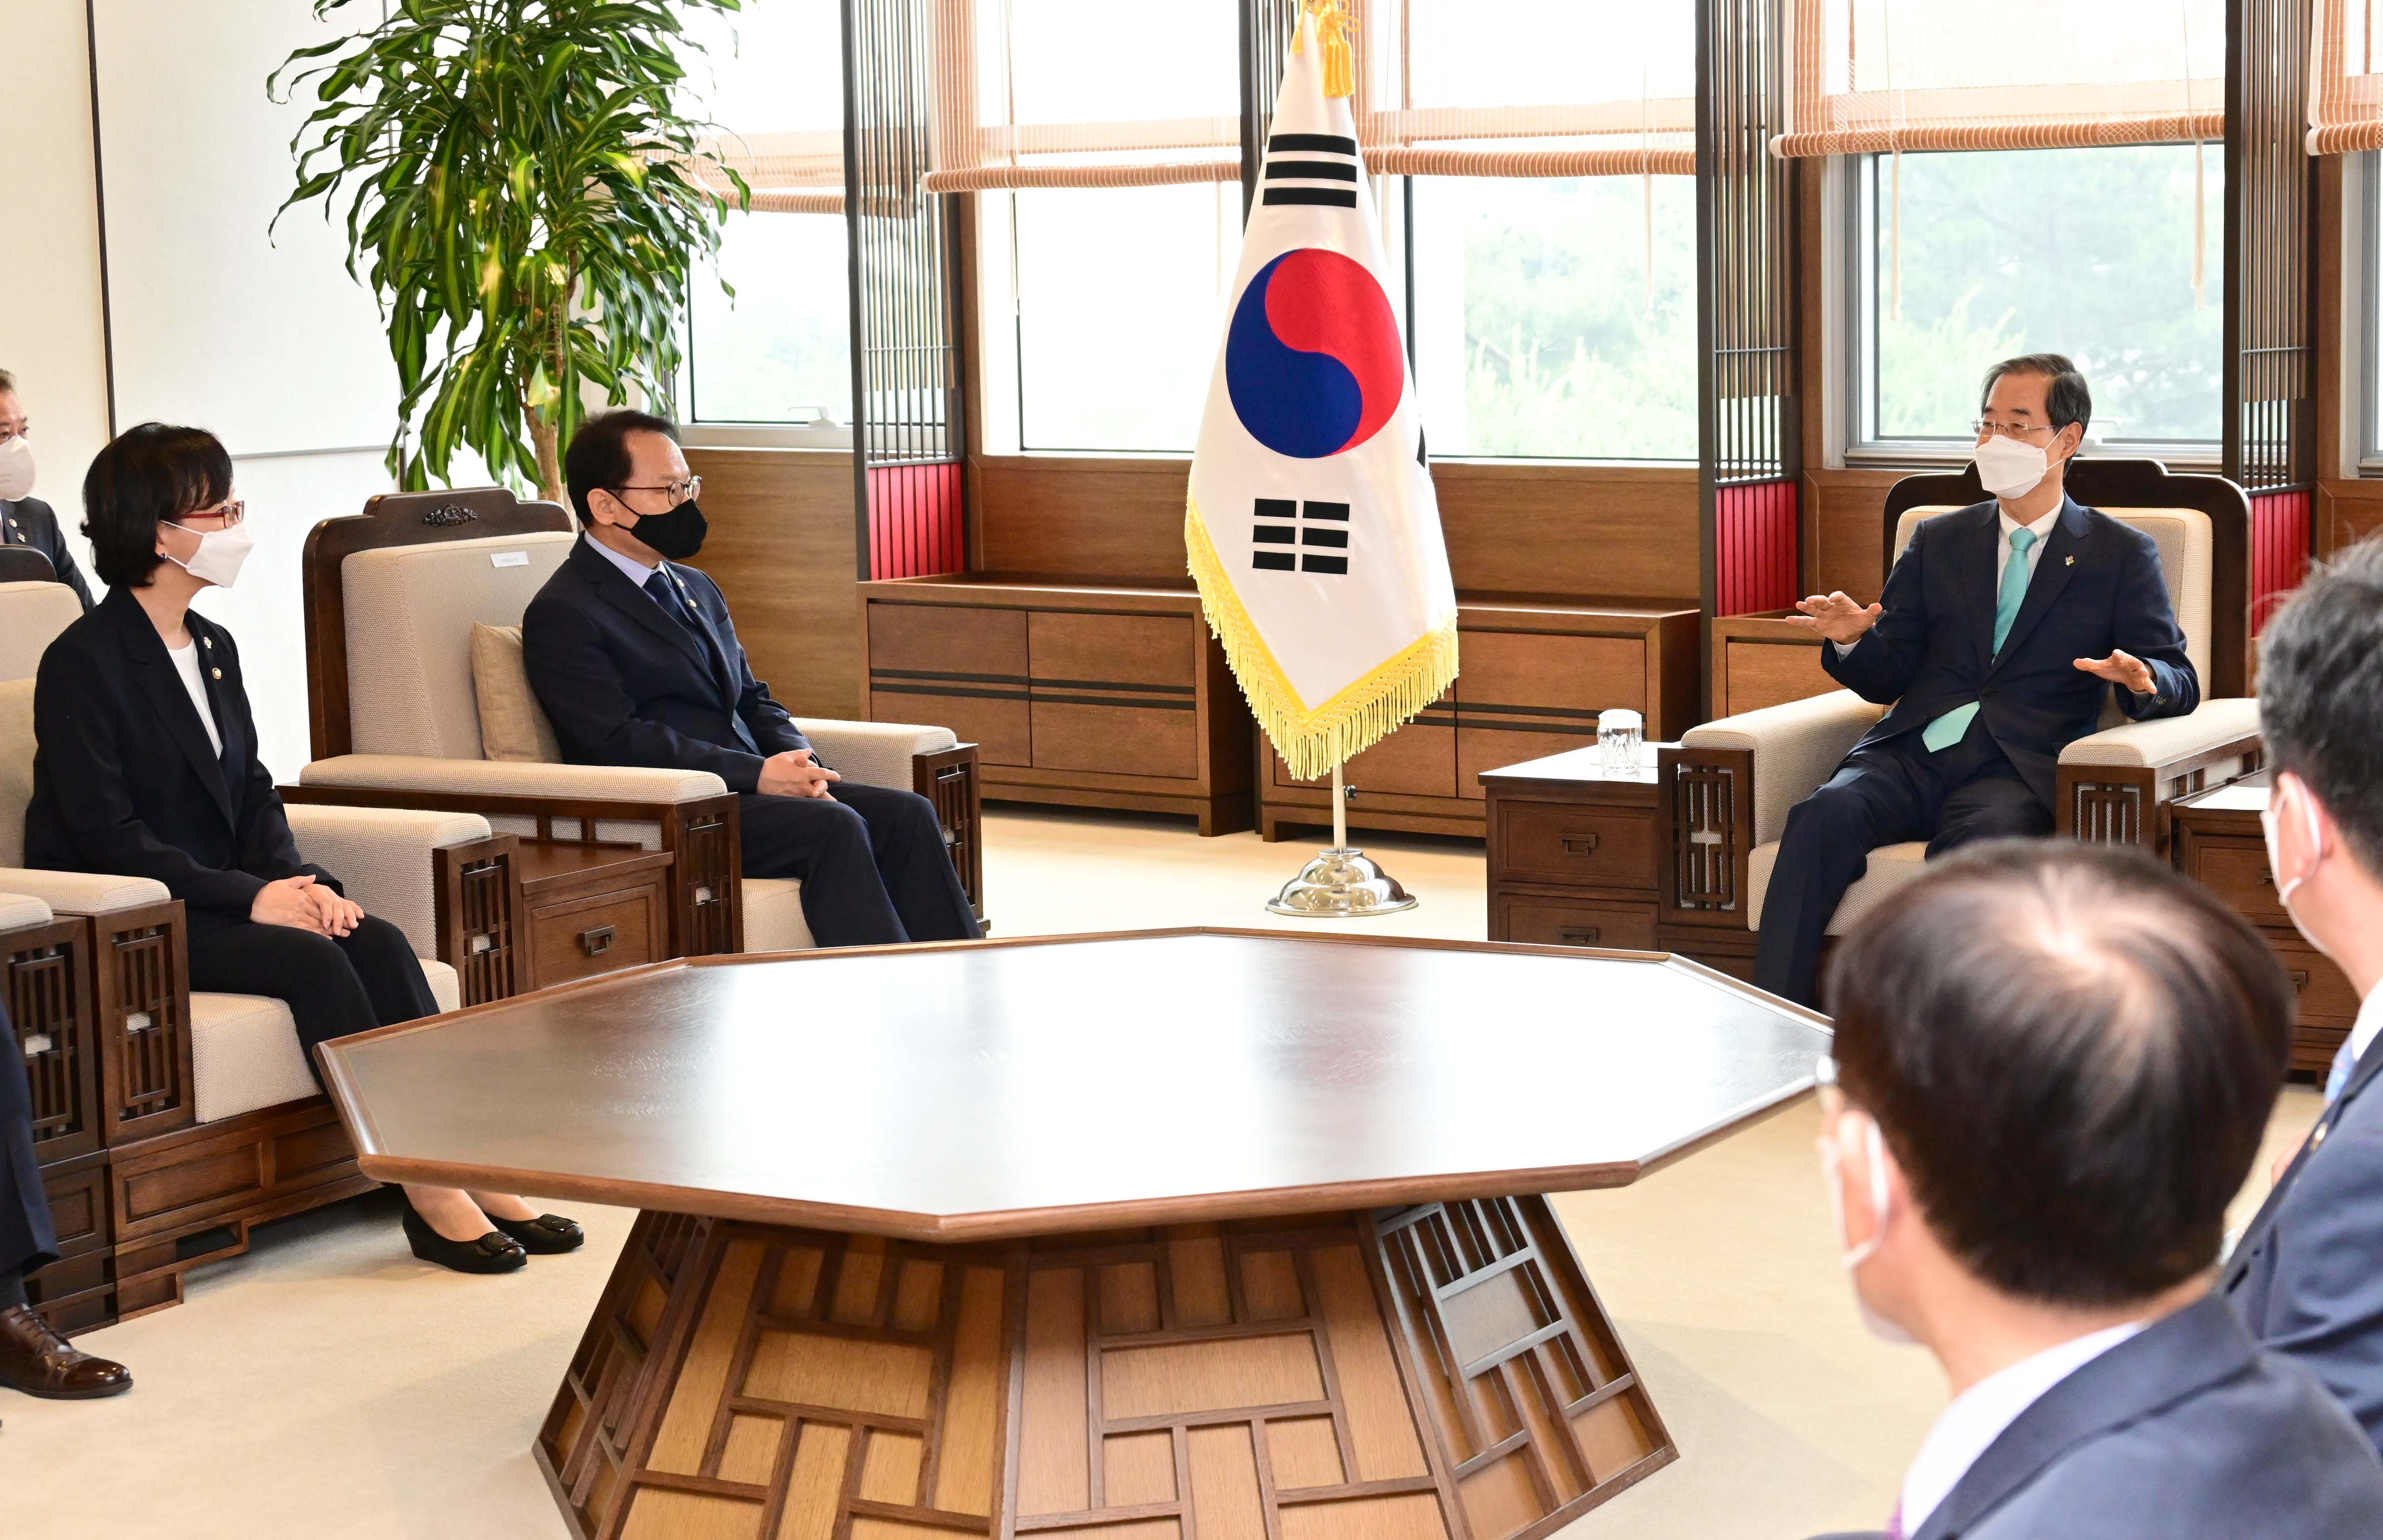 6월 9일 정부세종청사에서 김승호 인사혁신처장이 한덕수 국무총리로부터 임명장을 수여받고 이야기를 나누는 모습